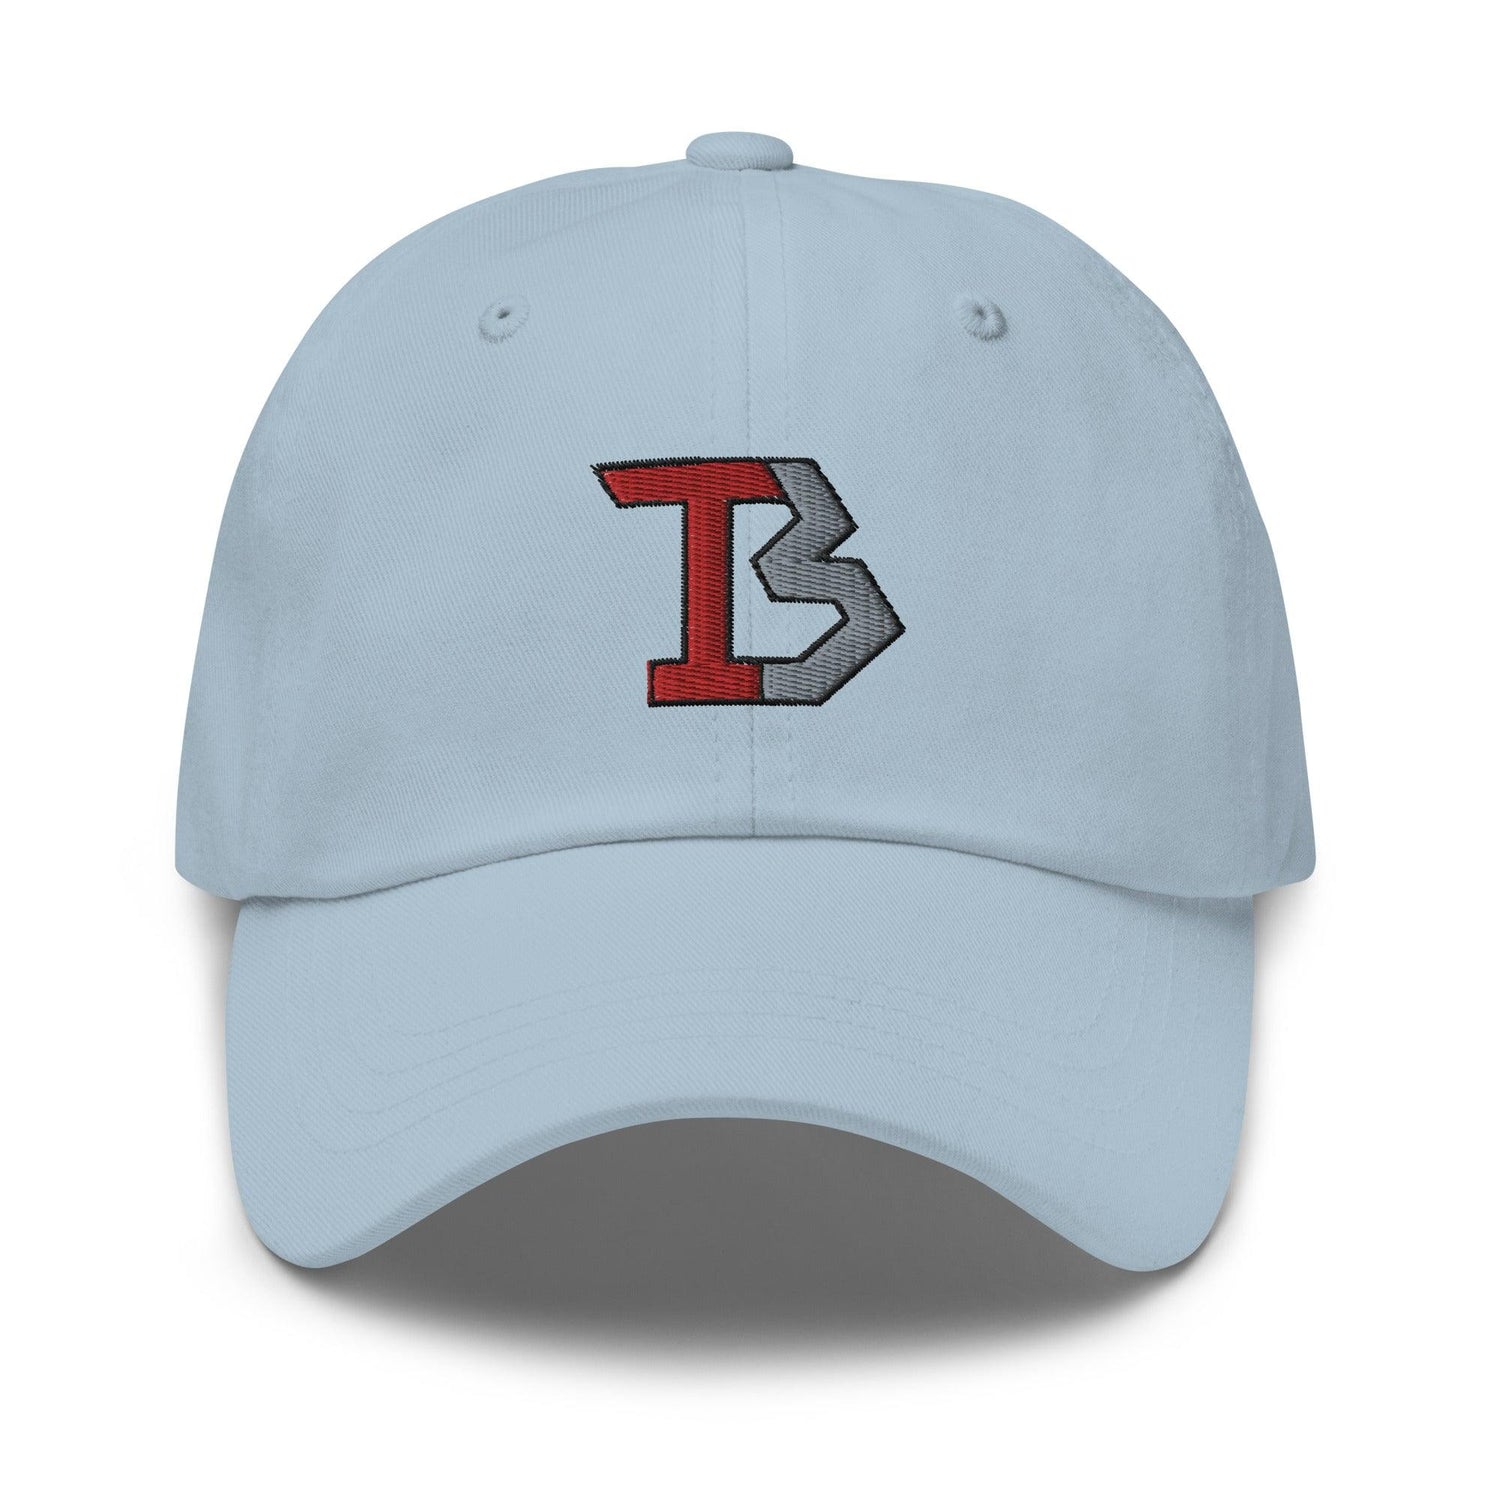 Tatum Bethune "Elite" hat - Fan Arch